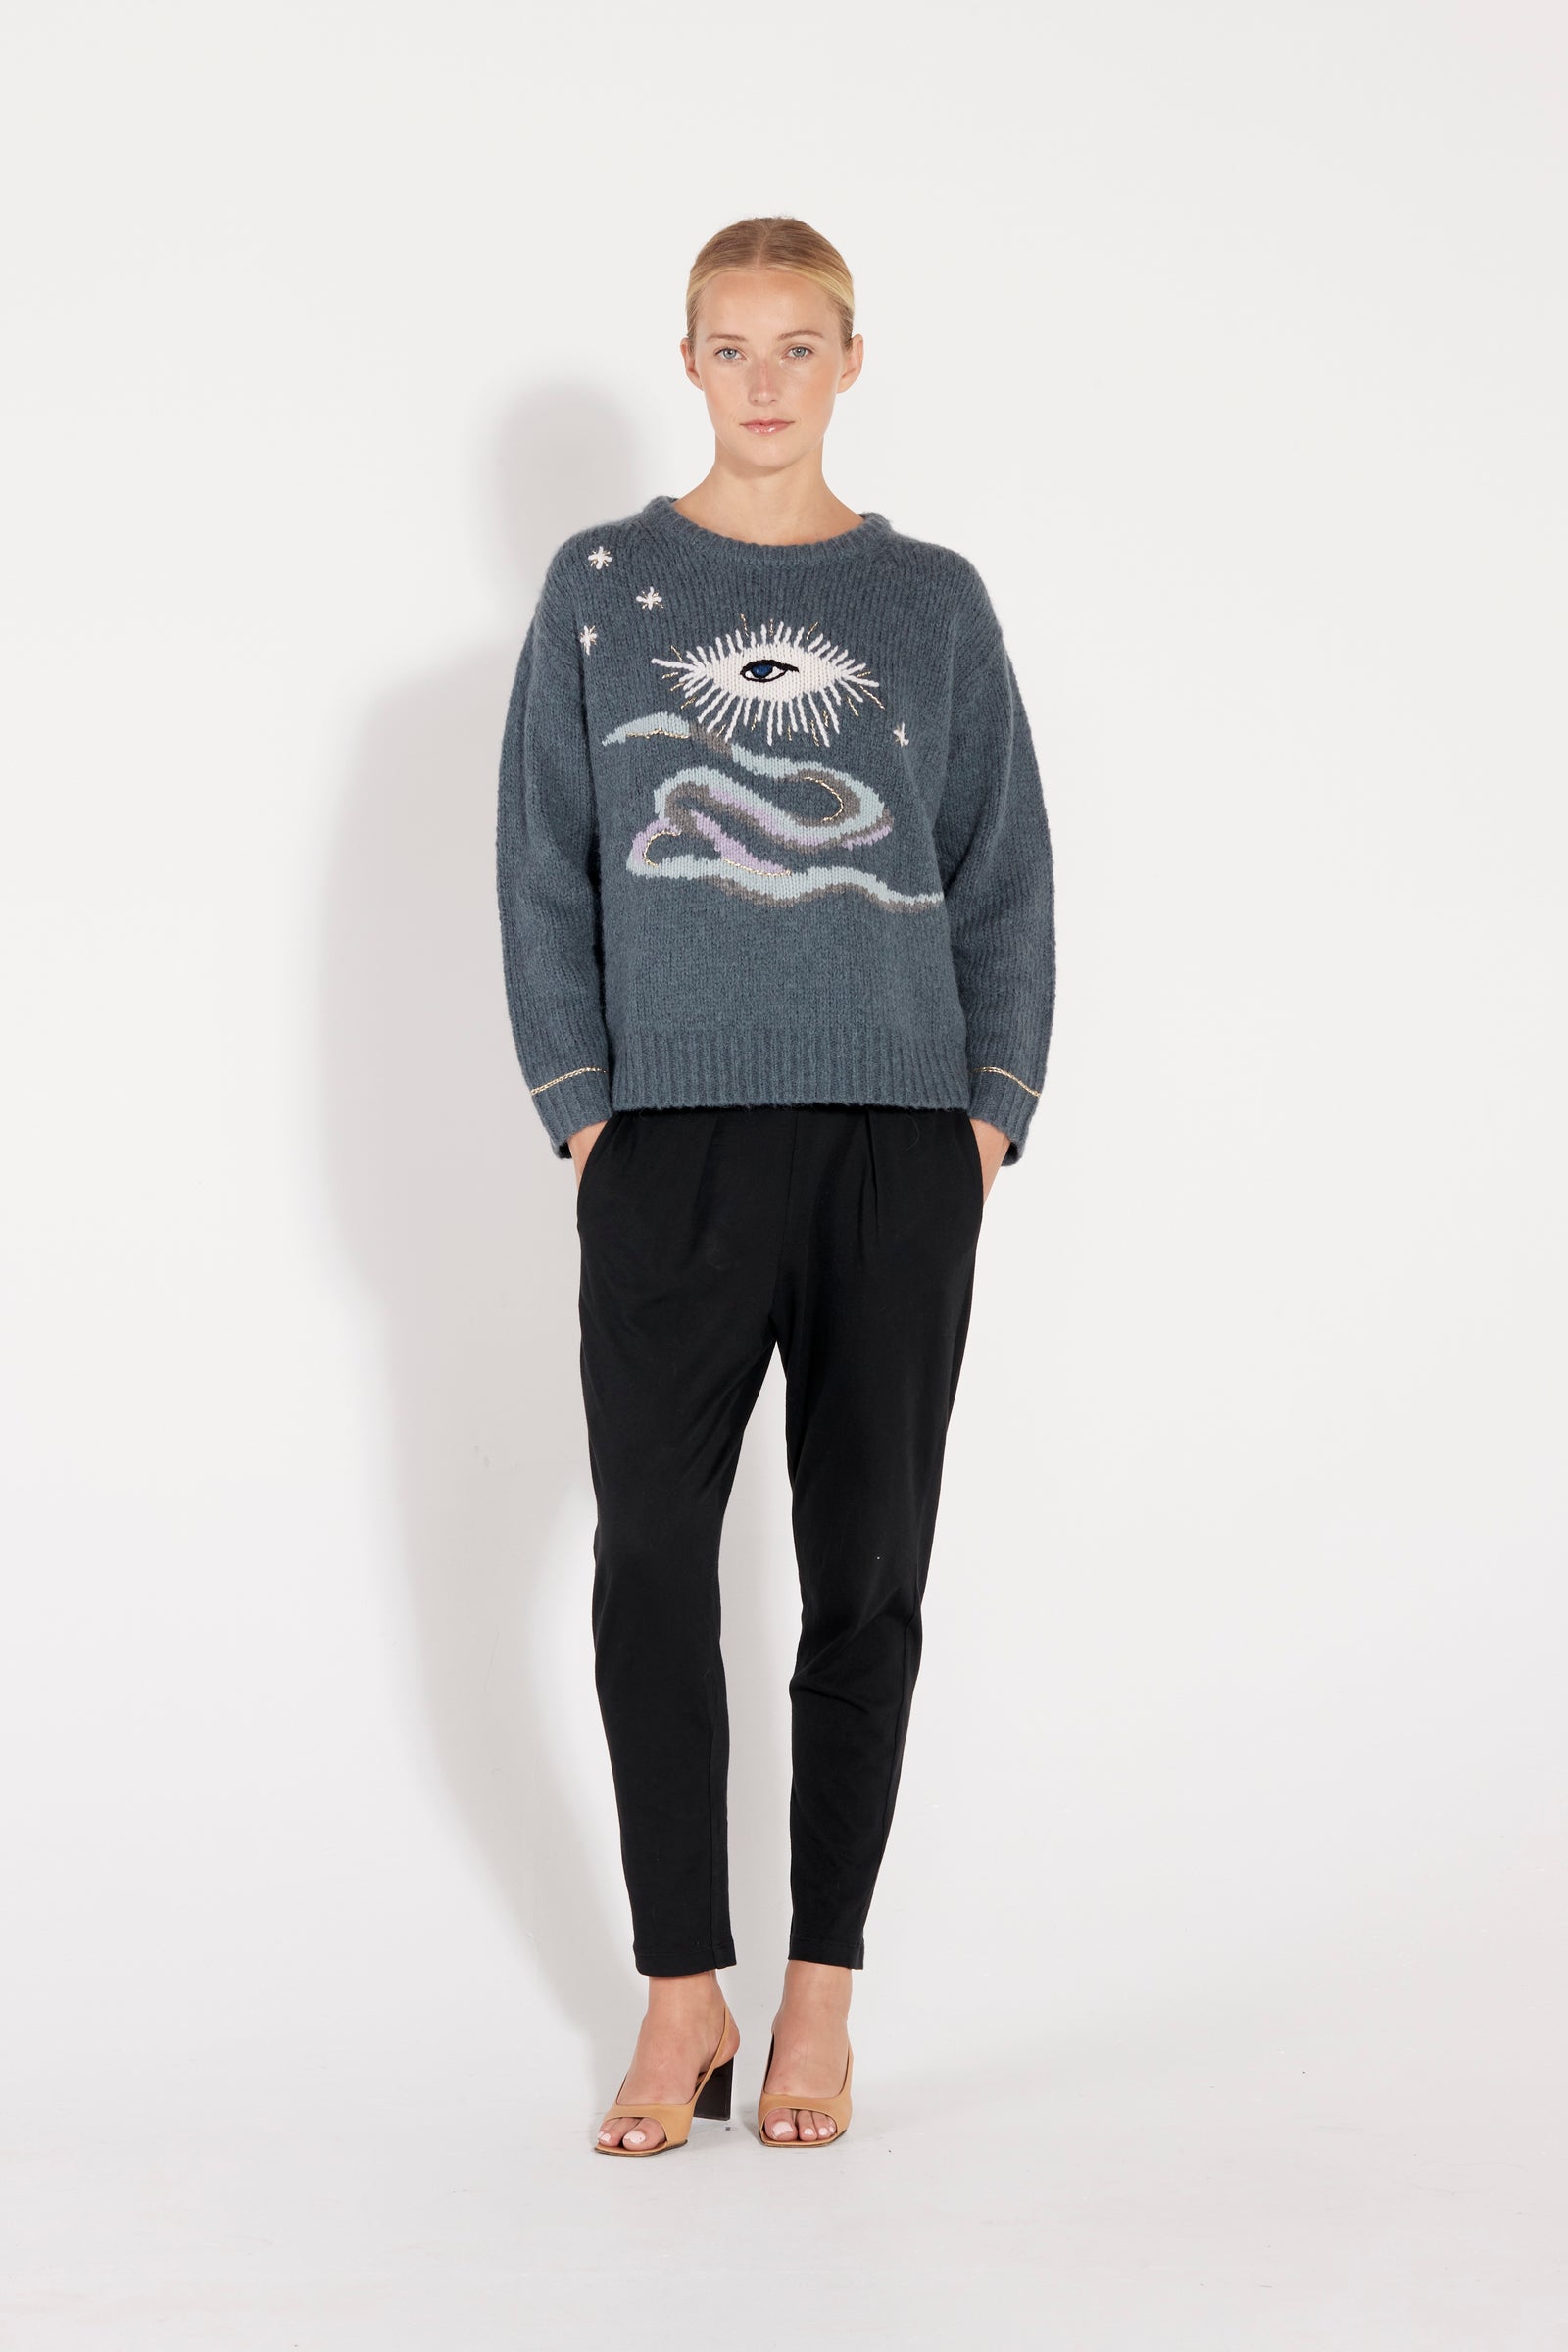 Storm Tarot Diana Pullover Sweater